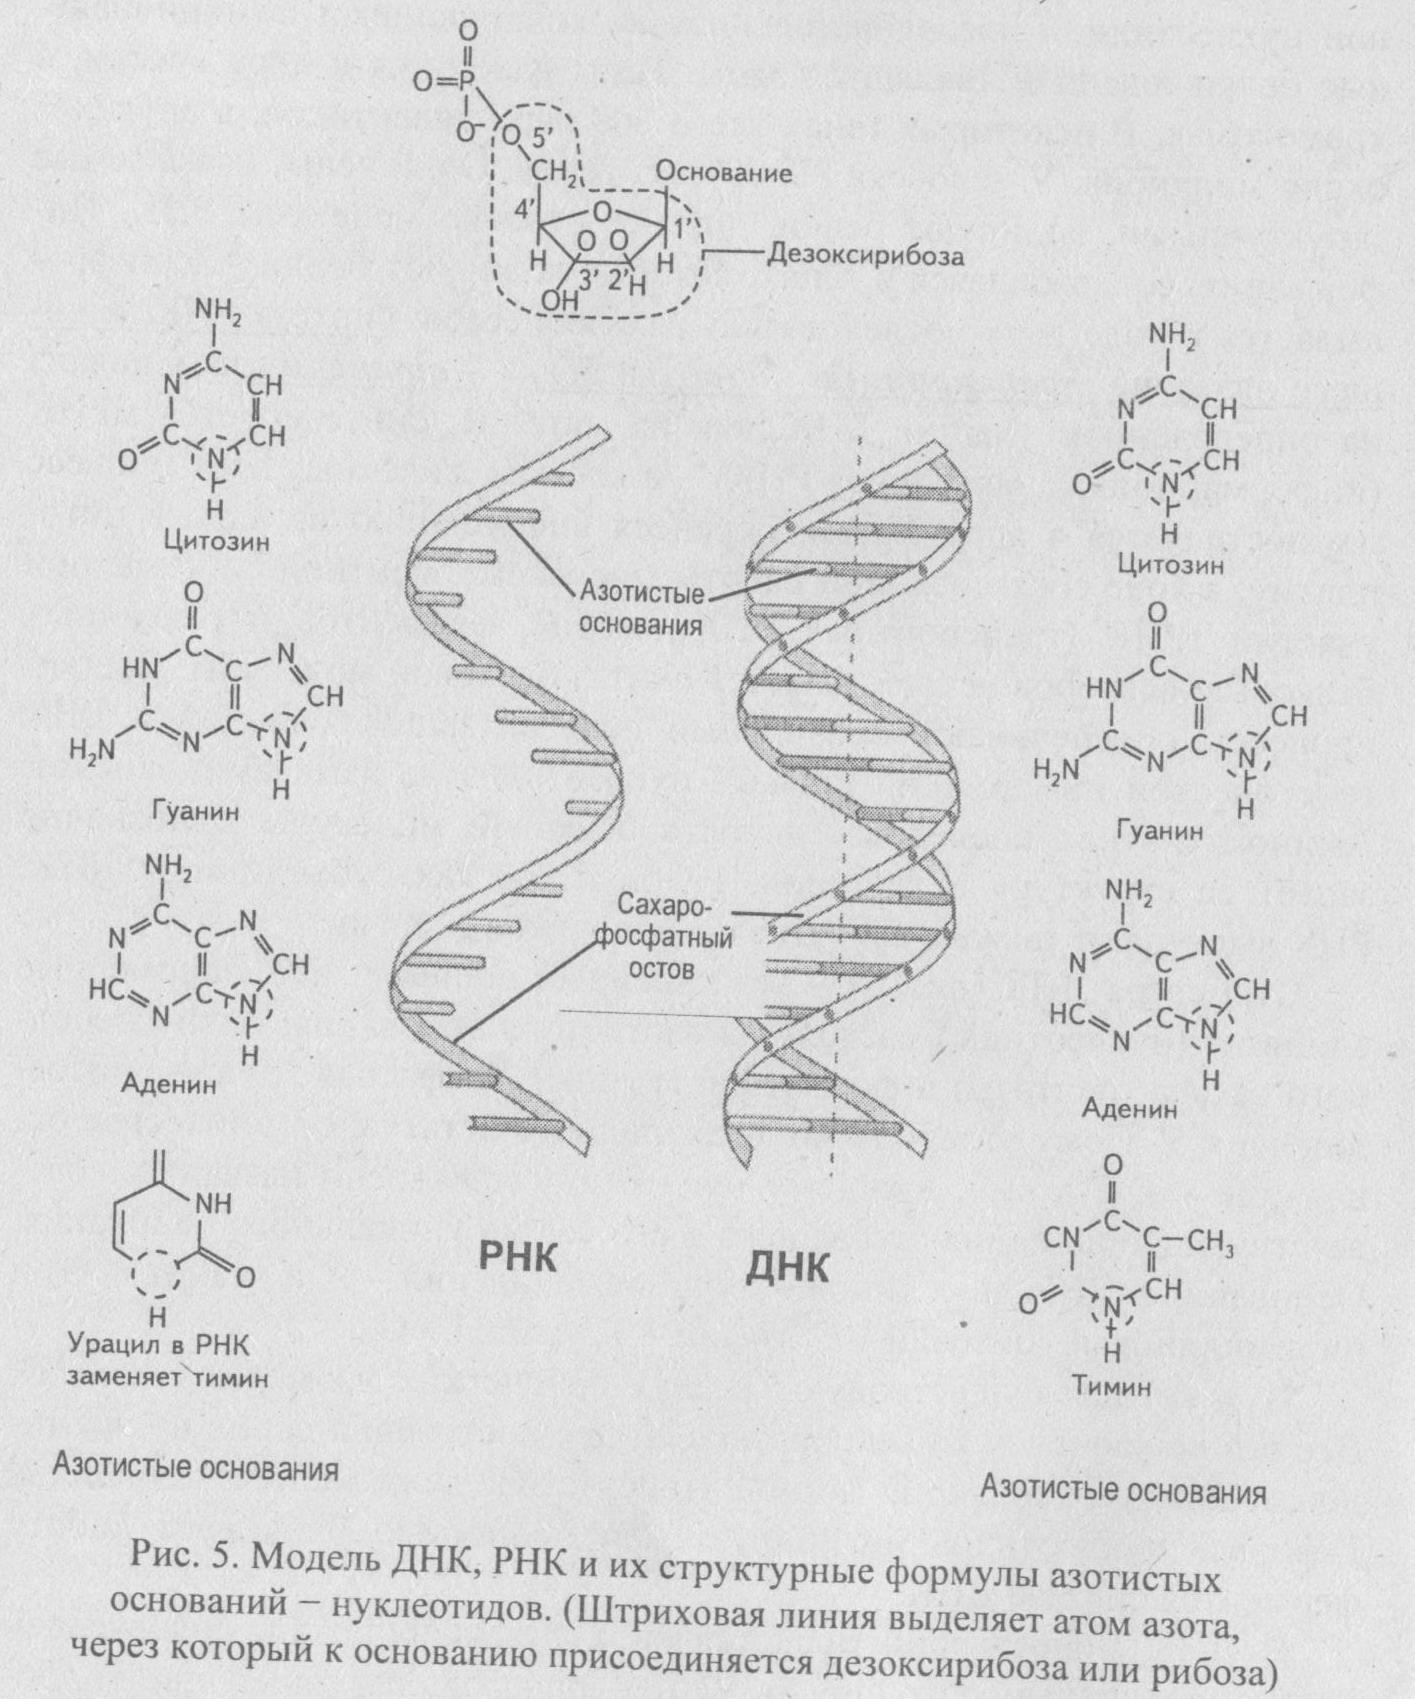 Азотистые основания входящие в рнк. Азотистые основания ДНК И РНК формулы. ДНК РНК урацил. Азотистые основания ДНК И РНК. ДНК РНК аденин Тимин гуанин цитозин.